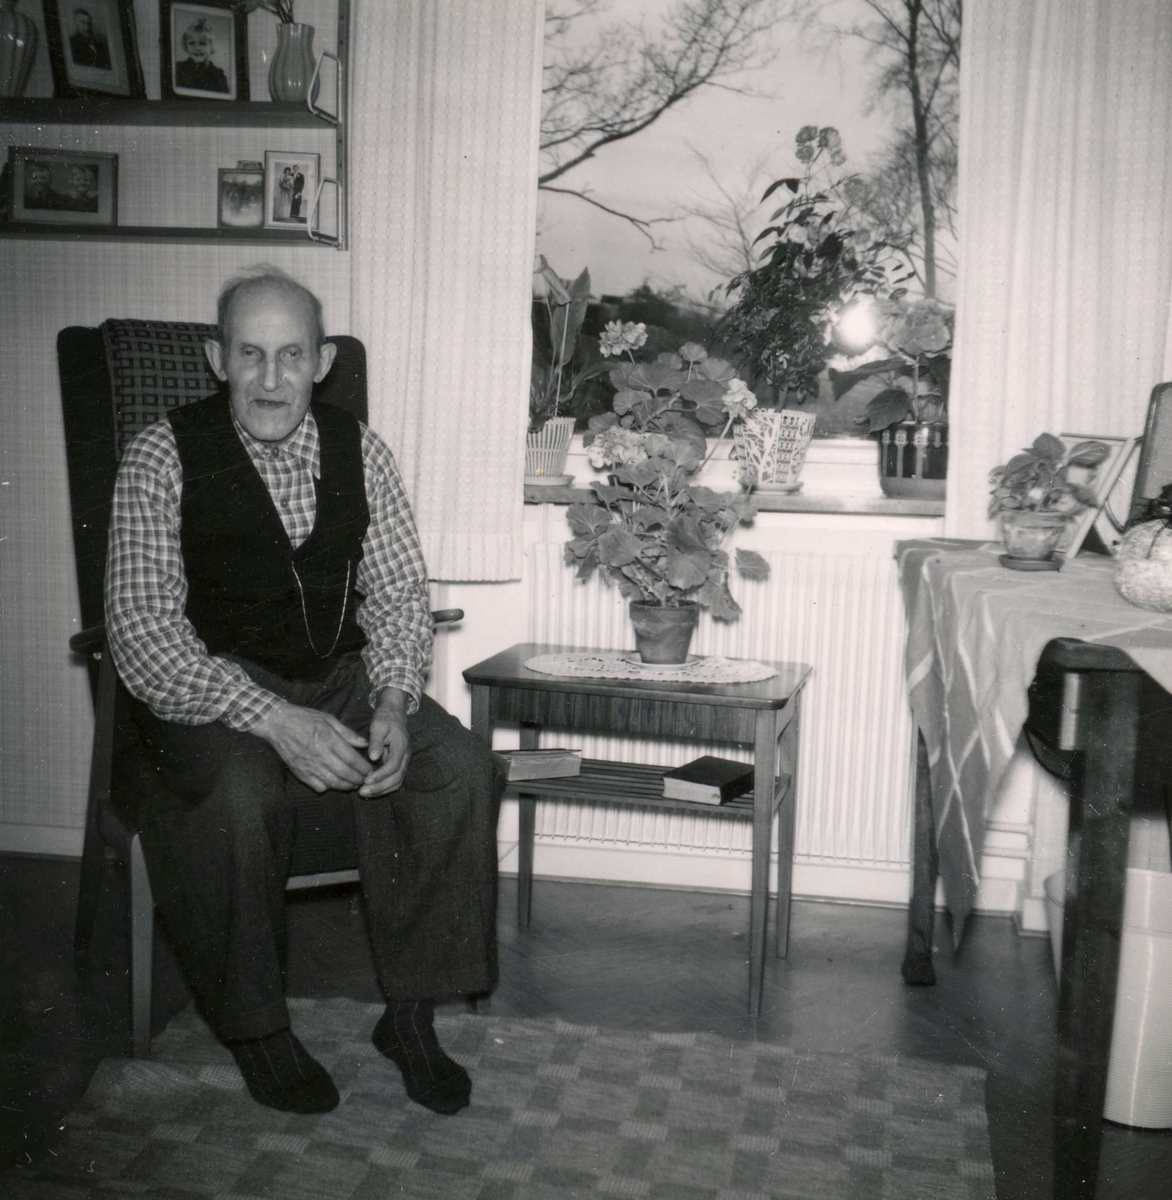 Robert Pettersson (1886 - 1968) sitter i sitt rum på Brattåshemmet år 1957. Robert arbetade som dräng på Ekans gård sedan 1912. Han avled på Brattåshemmet.